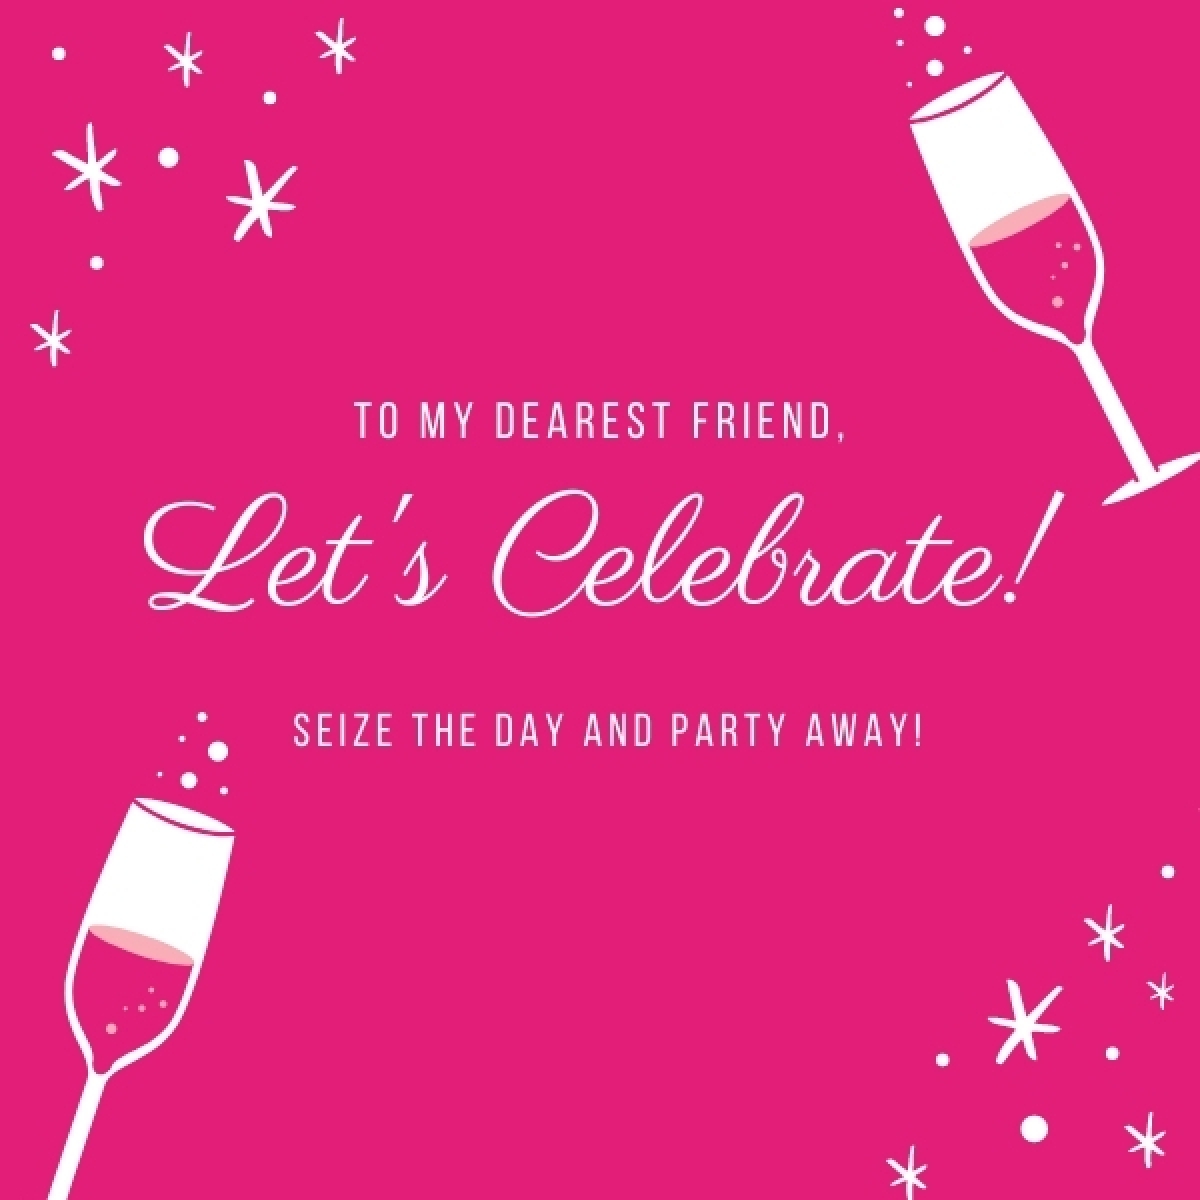 Send a Celebration e-card eCards